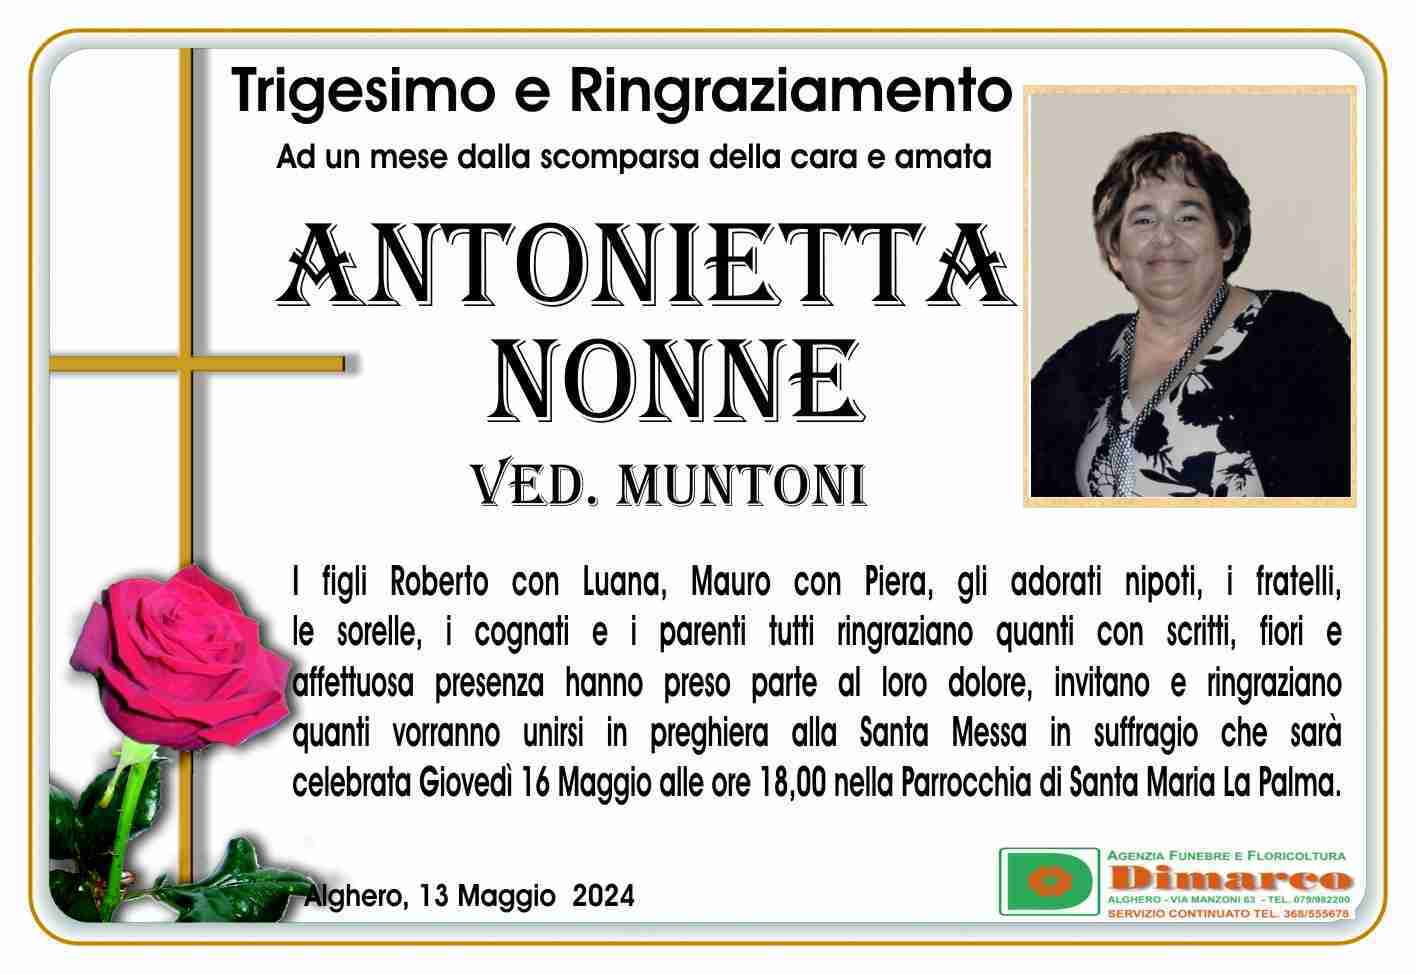 Antonietta Nonne